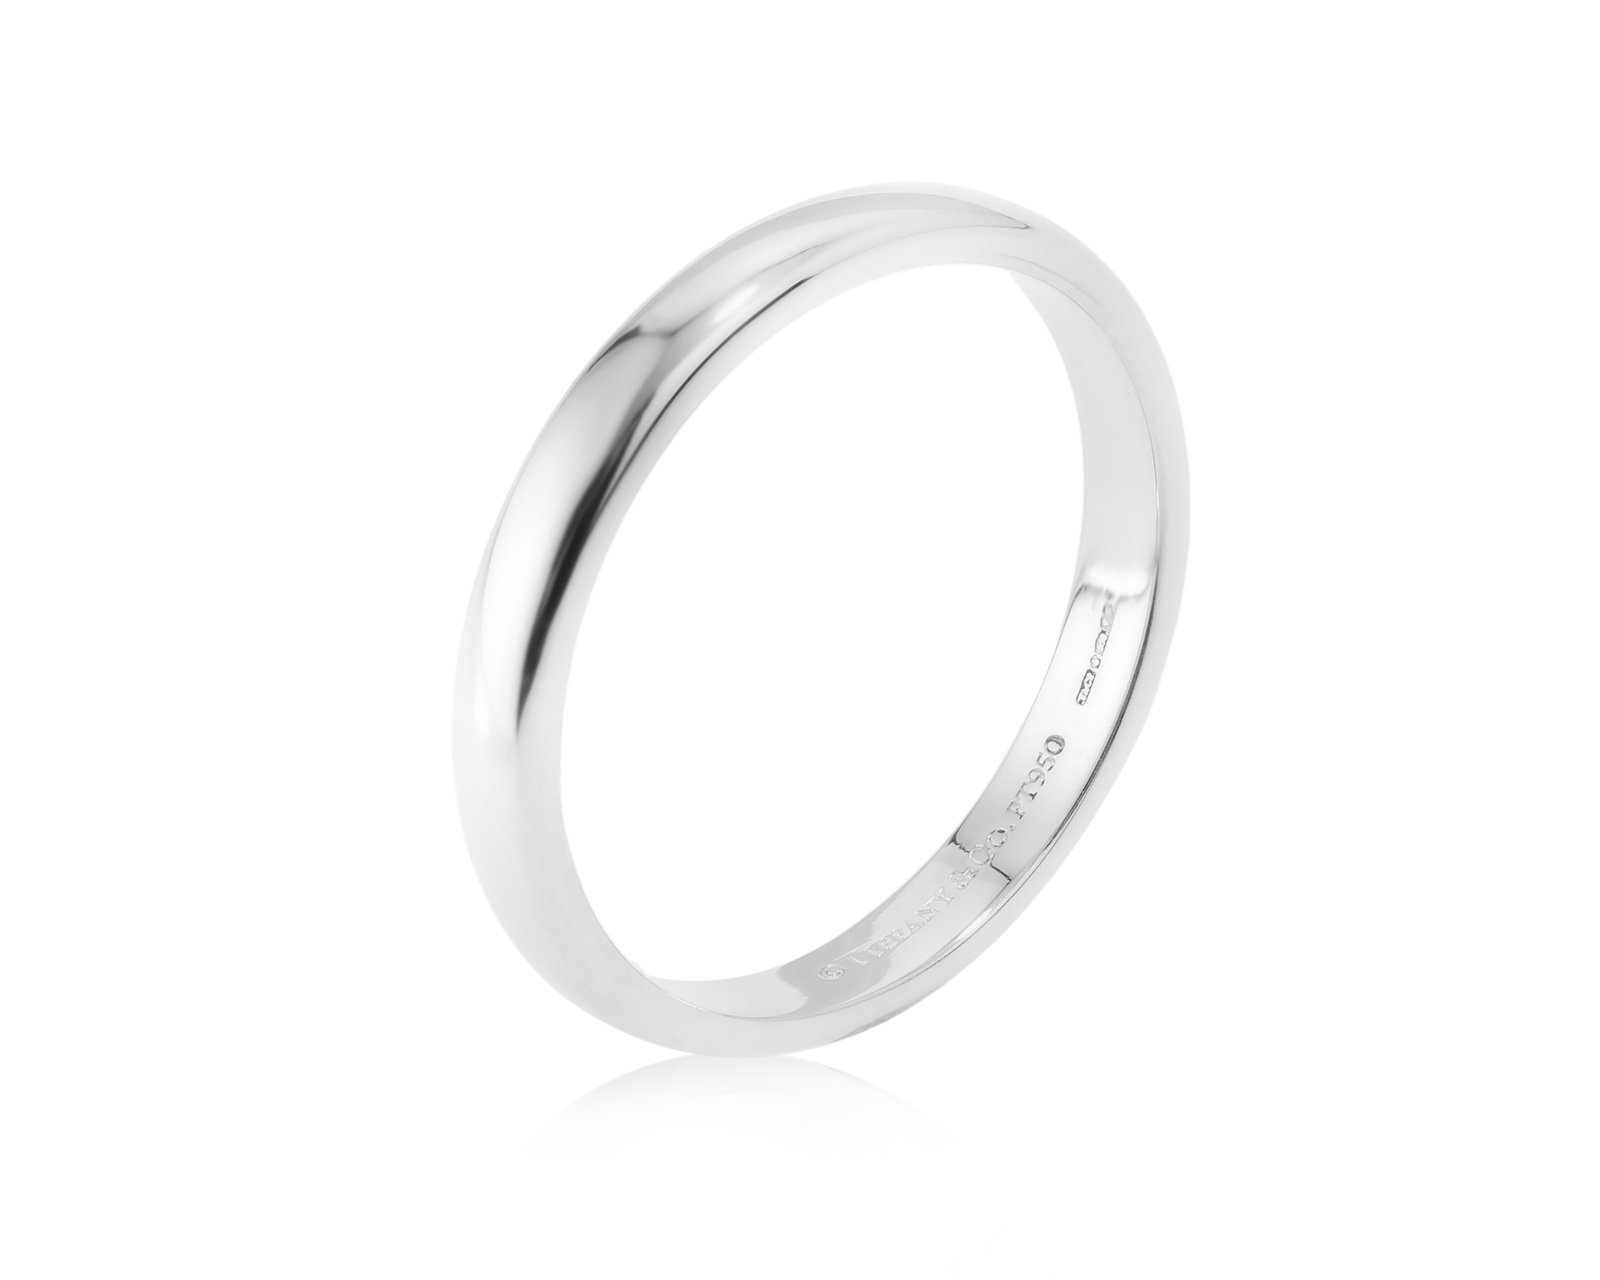 Оригинальное платиновое кольцо Tiffany&Co 160324/3